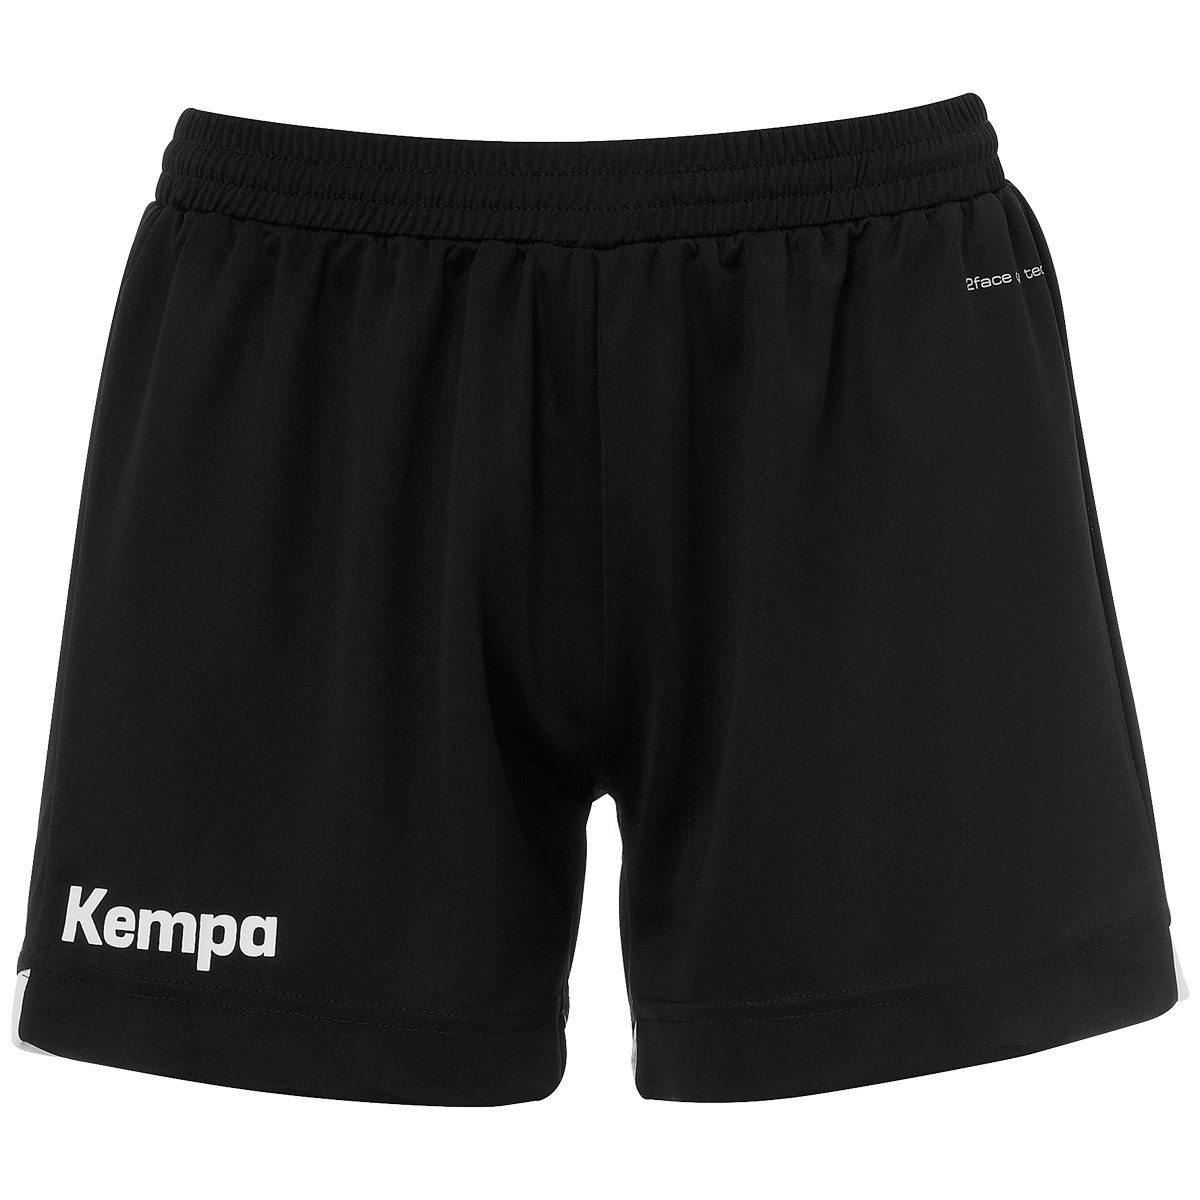 Kempa Shorts Kempa Shorts PLAYER WOMEN schwarz/weiß